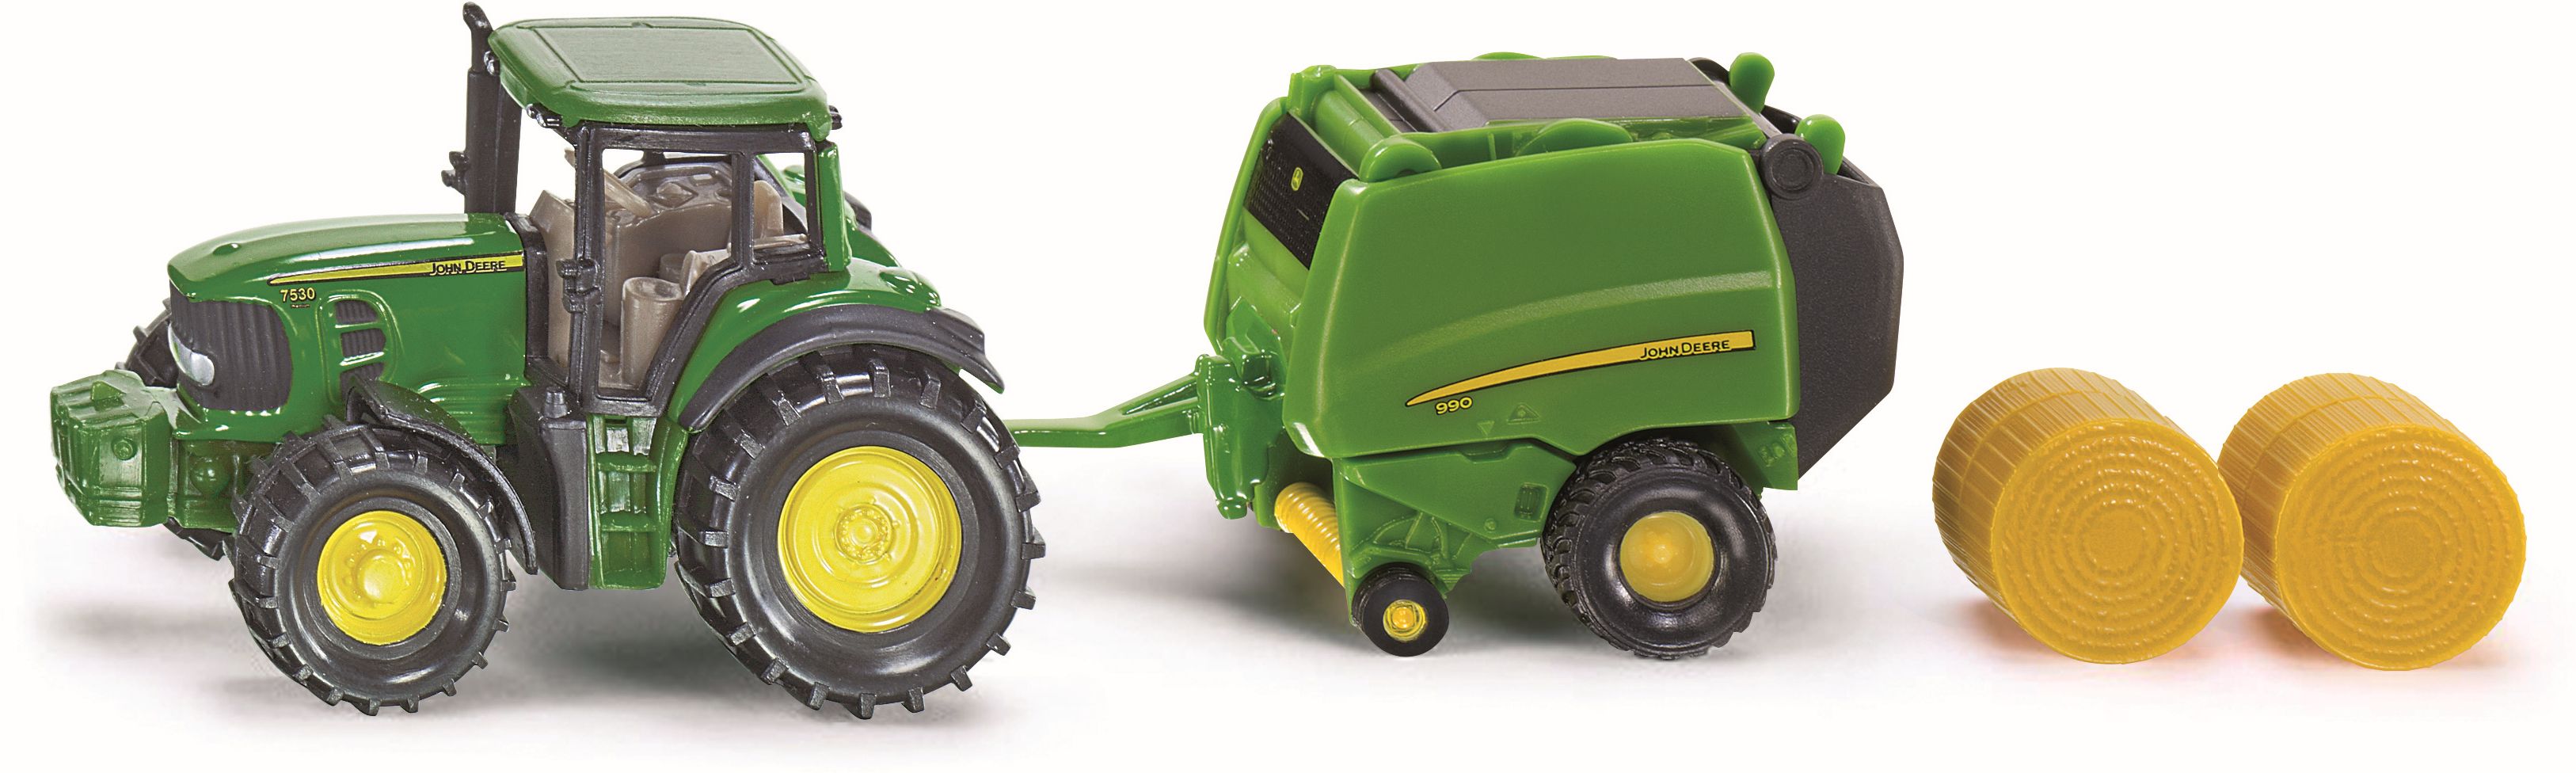 SIKU Super - John Deere Traktor mit Ballenpresse